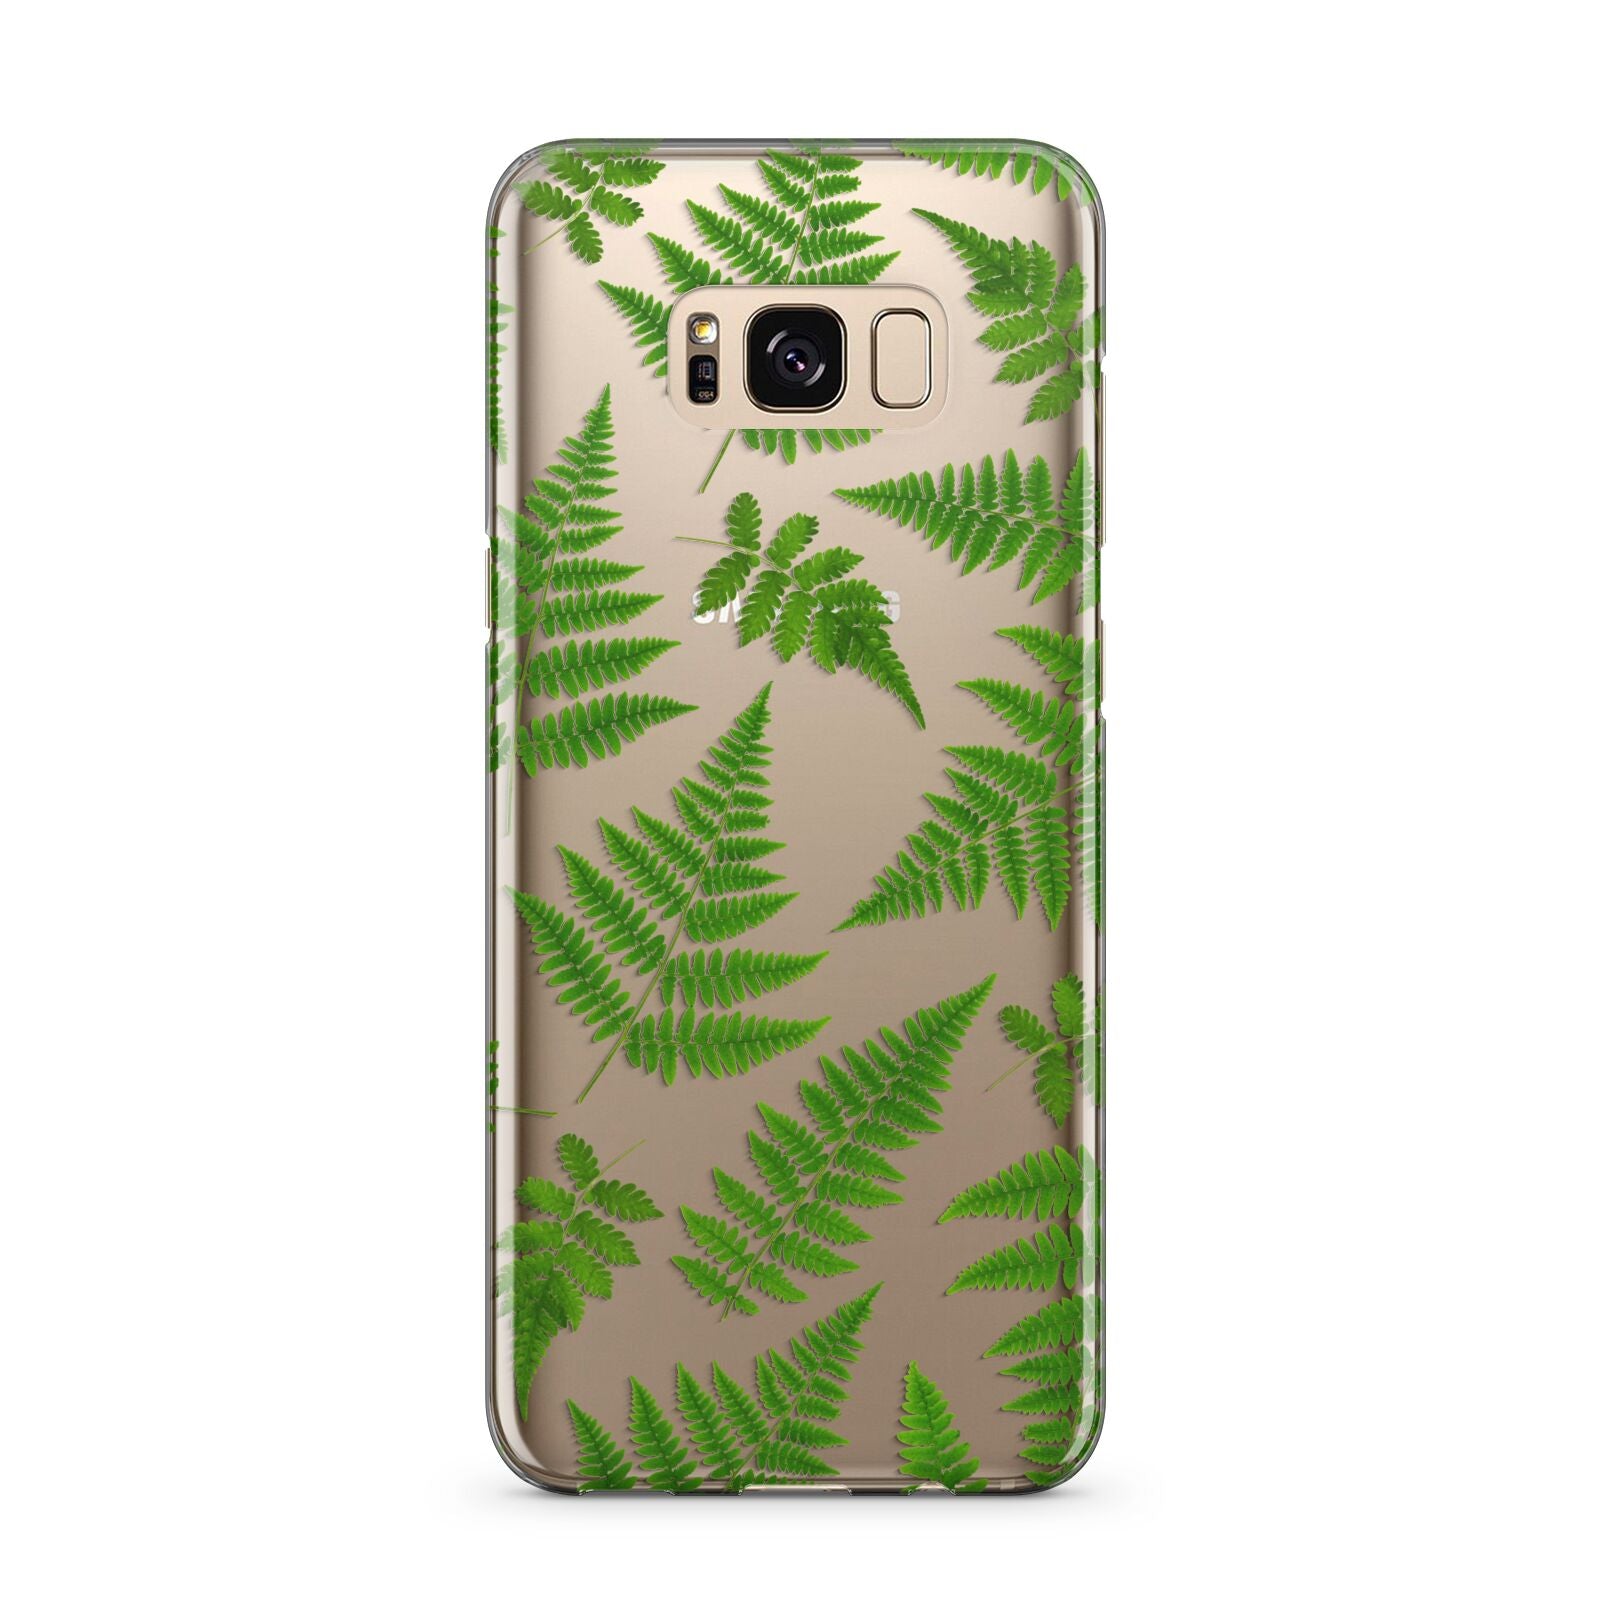 Fern Leaf Samsung Galaxy S8 Plus Case